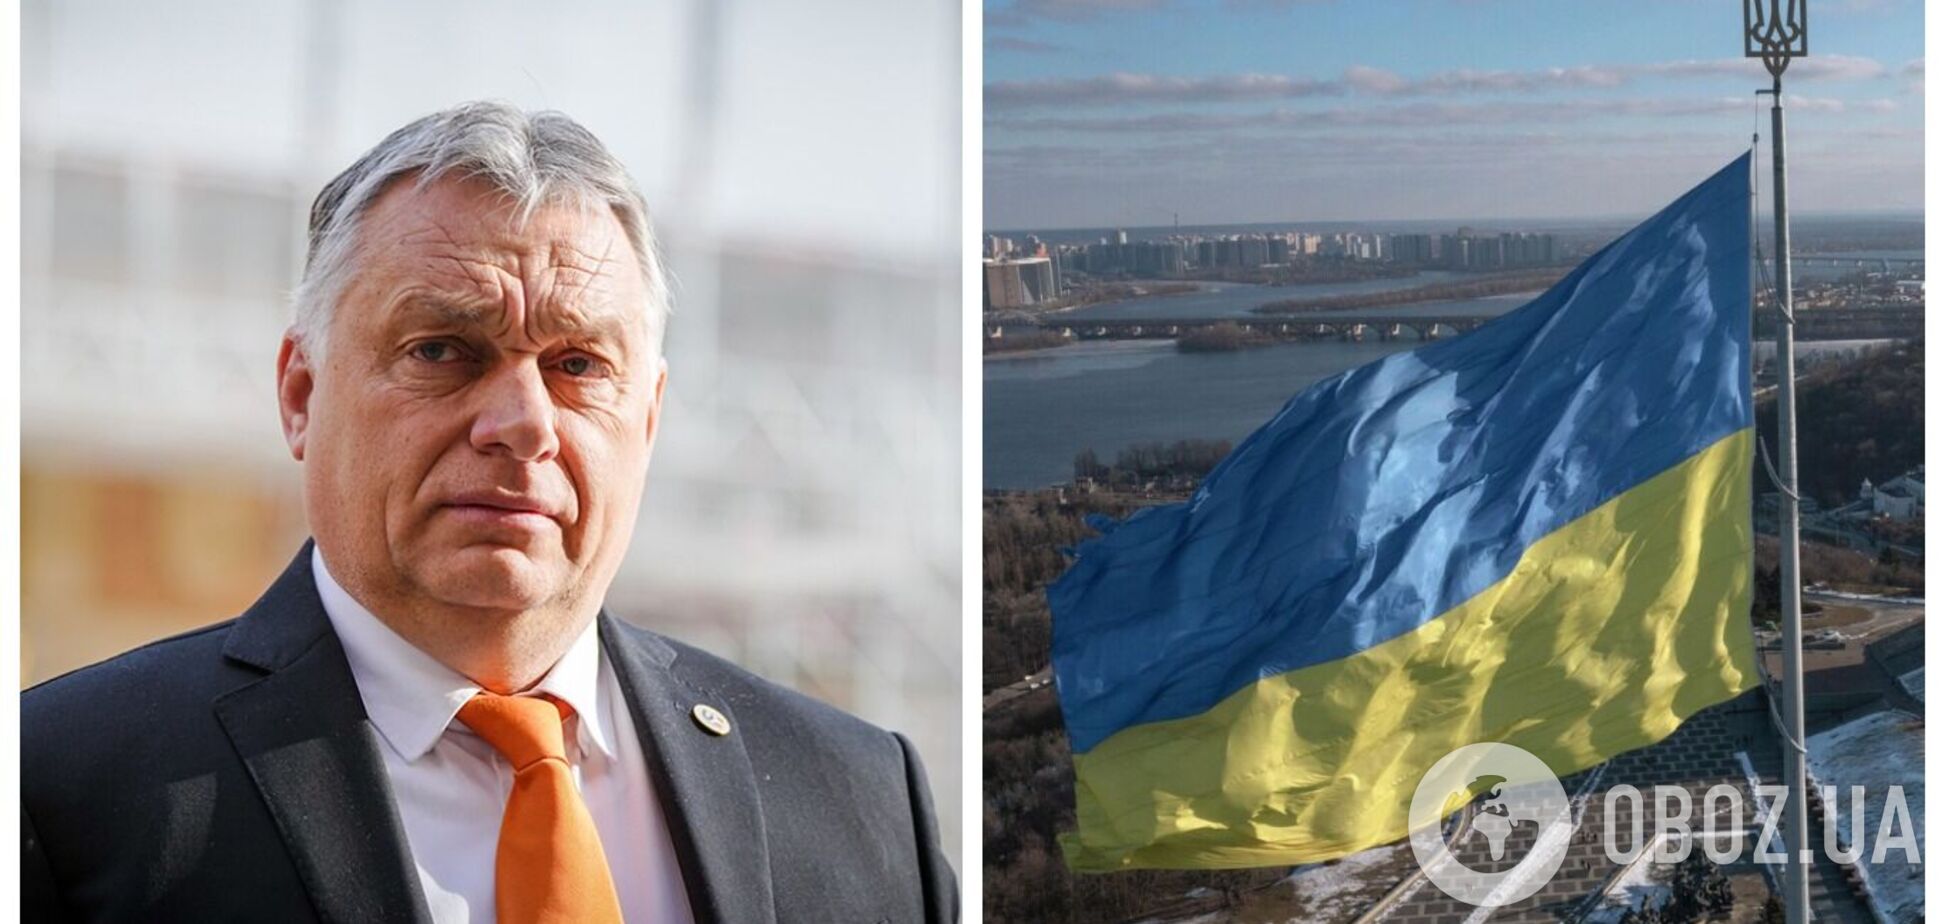 Європі потрібна суверенна Україна, щоб Росія не становила загрози, – прем'єр Угорщини